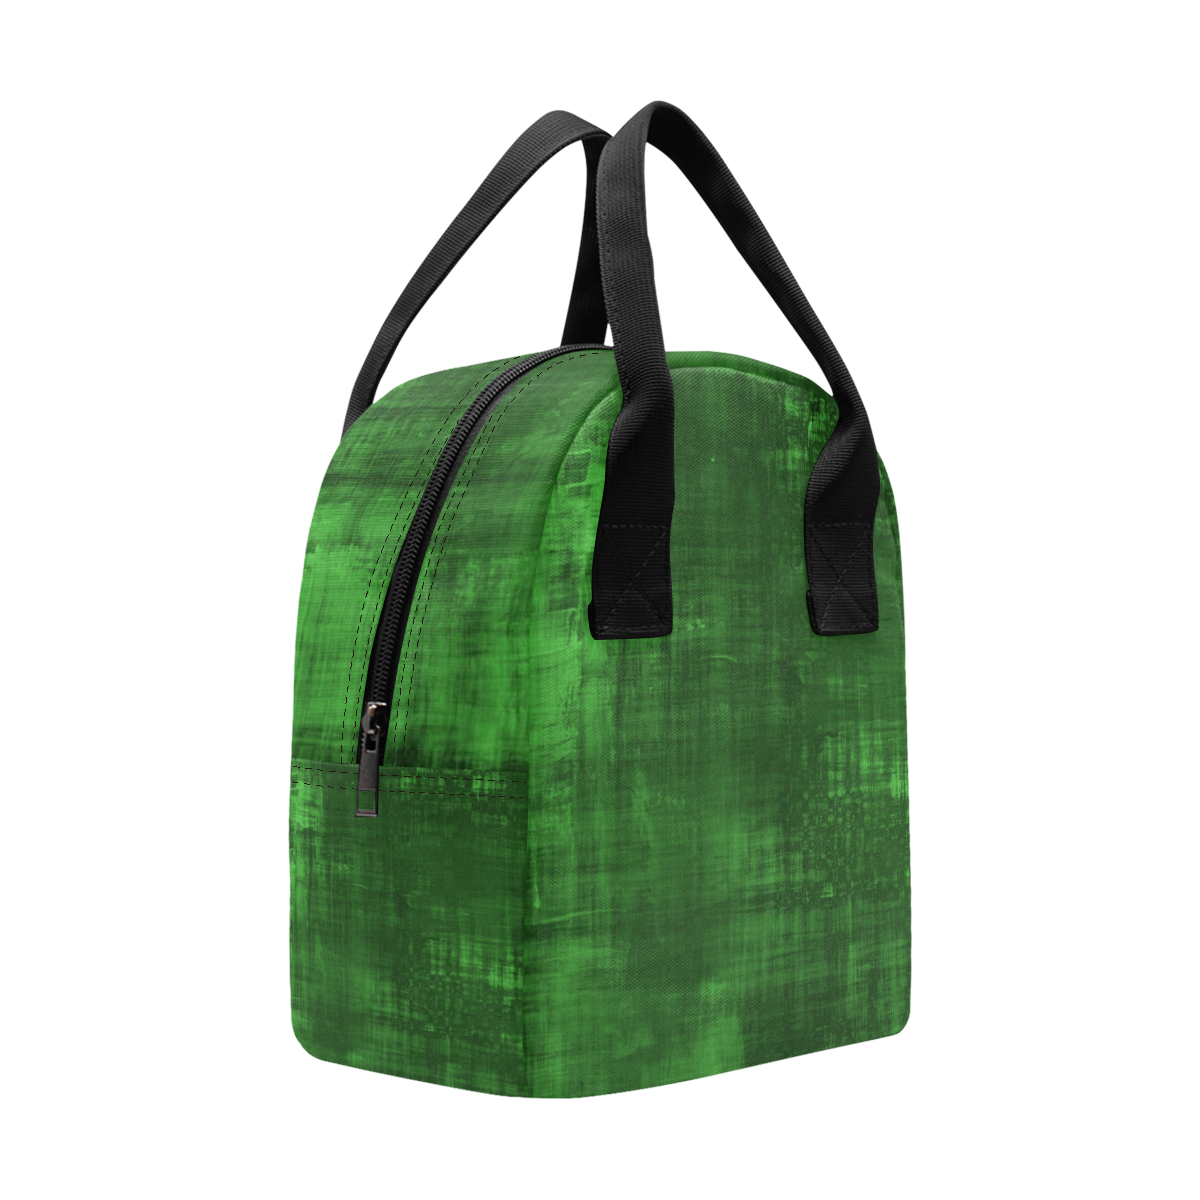 Green Grunge Zipper Lunch Bag (Model 1689)